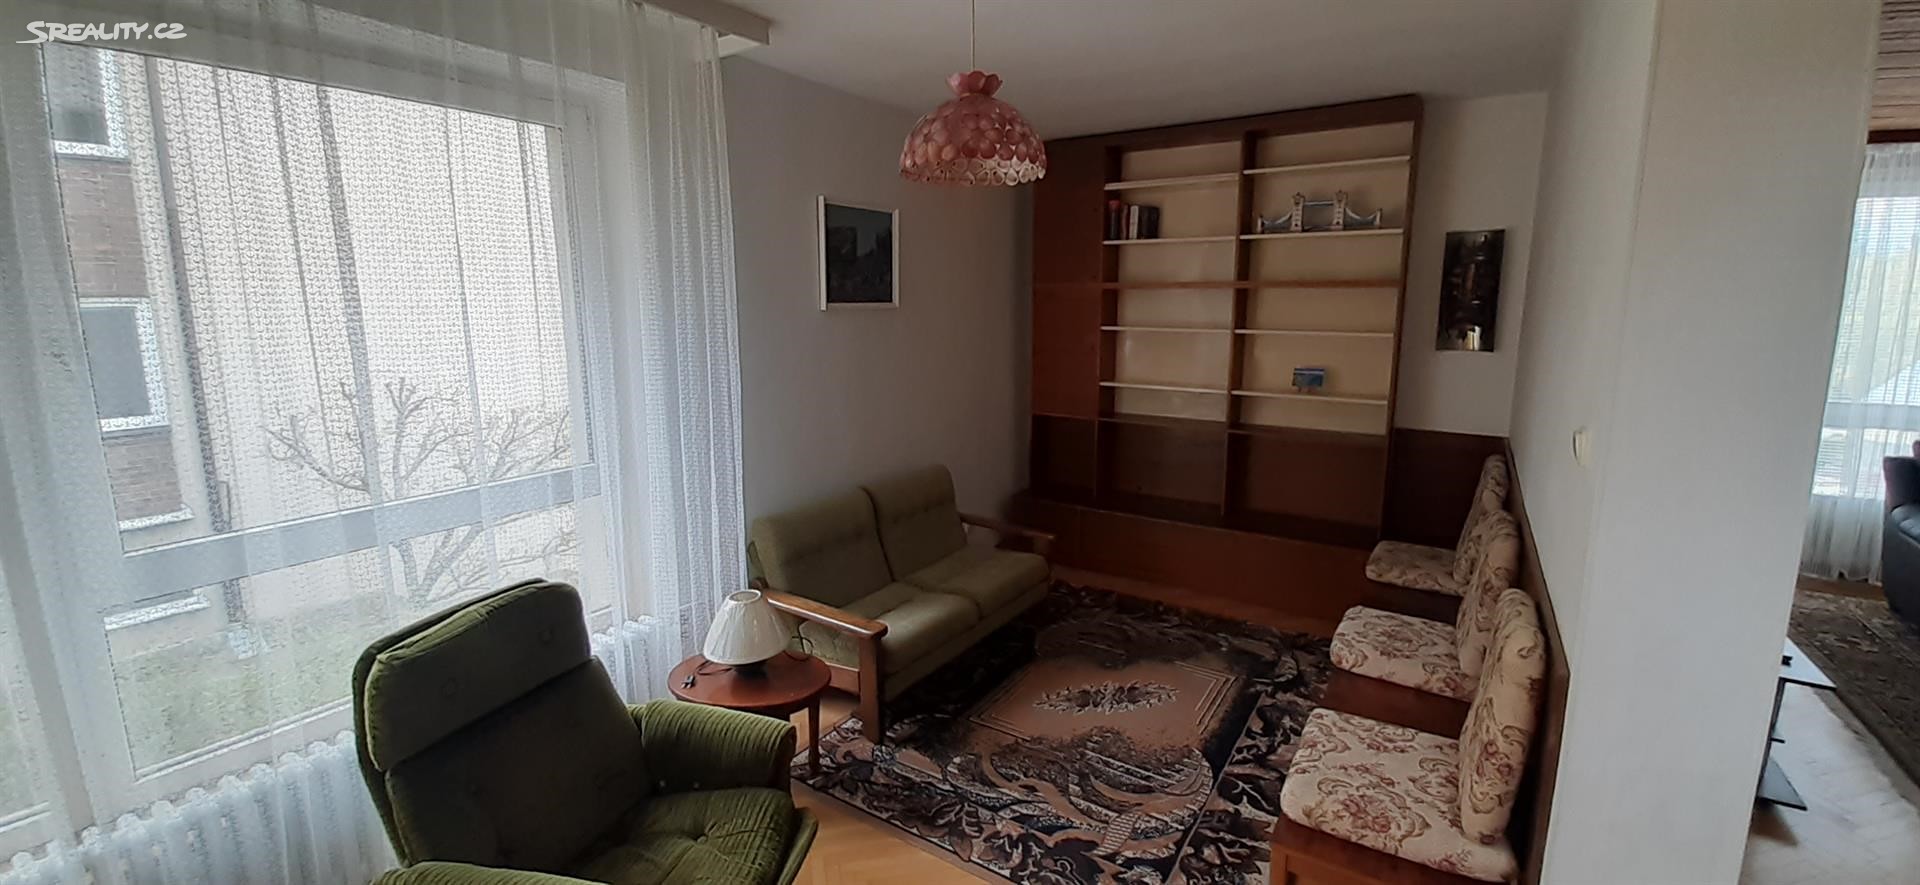 Pronájem bytu 4+1 136 m² (Mezonet), Nad pískovnou, Praha 4 - Krč